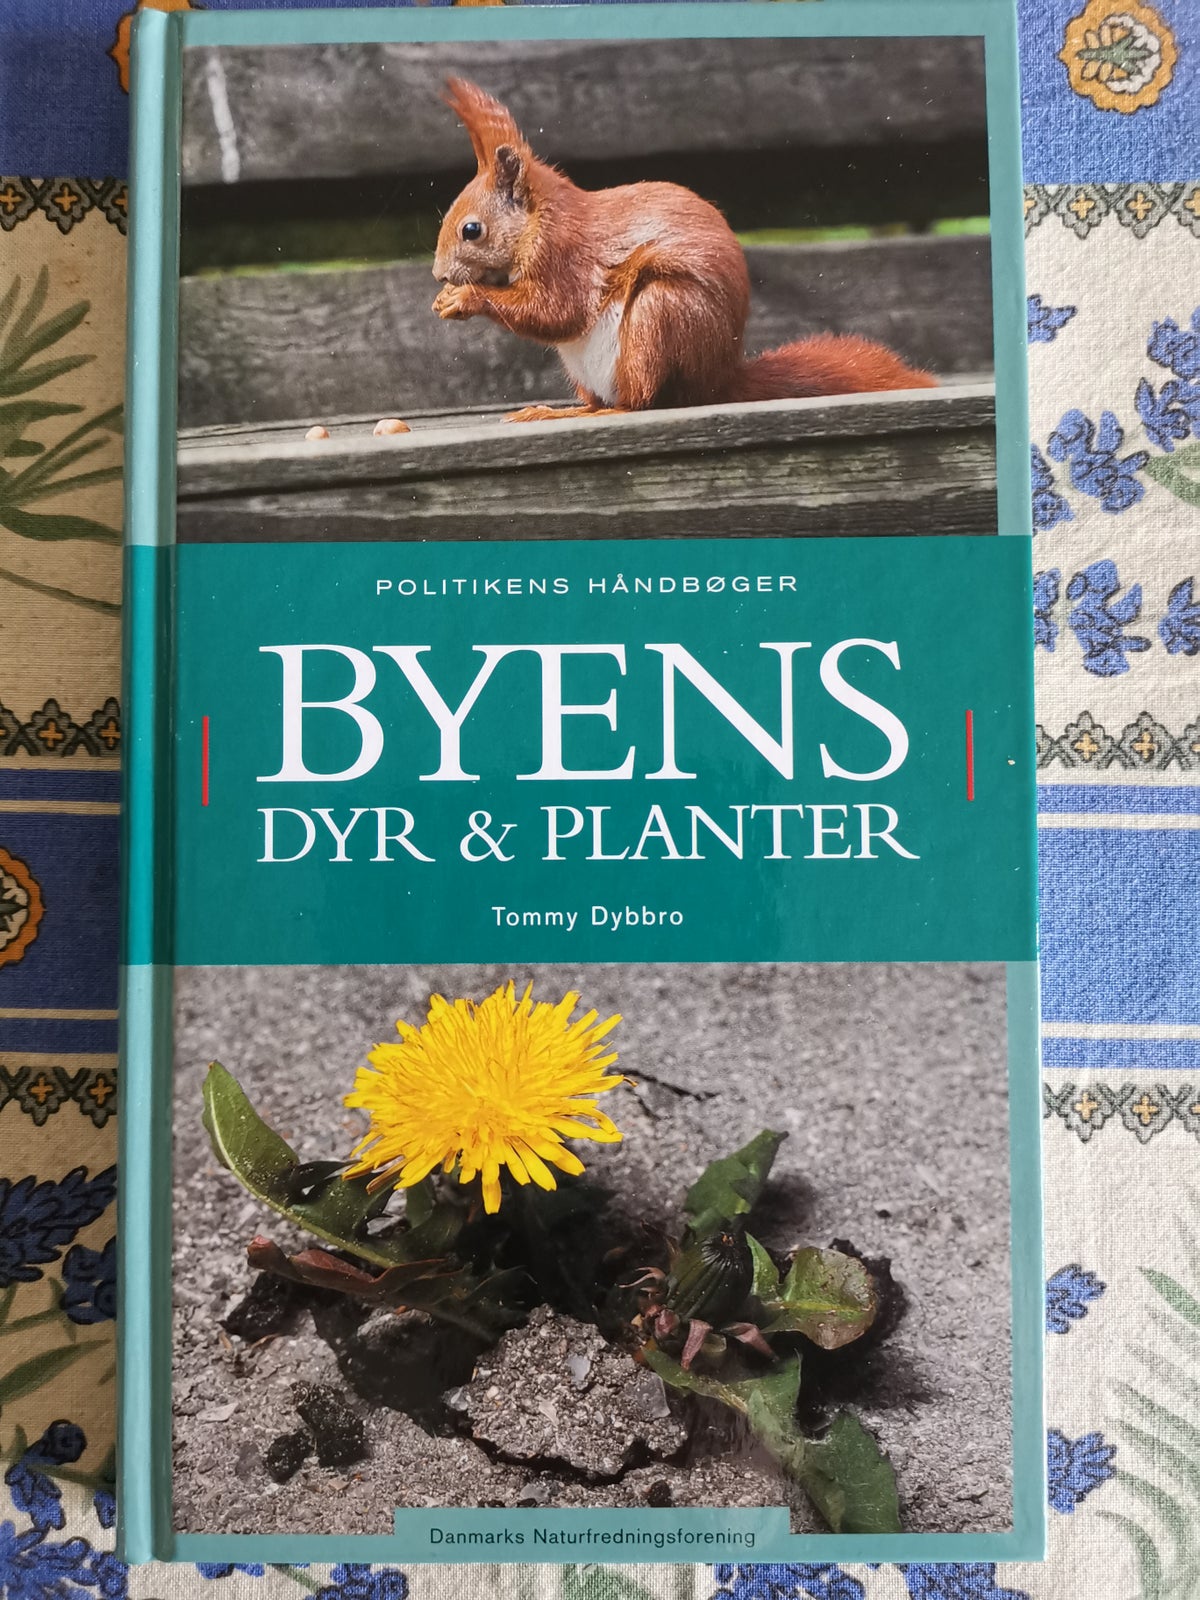 BYENS DYR & PLANTER, Tommy Dybbro, emne: dyr – dba.dk – Køb og Salg af Nyt Brugt